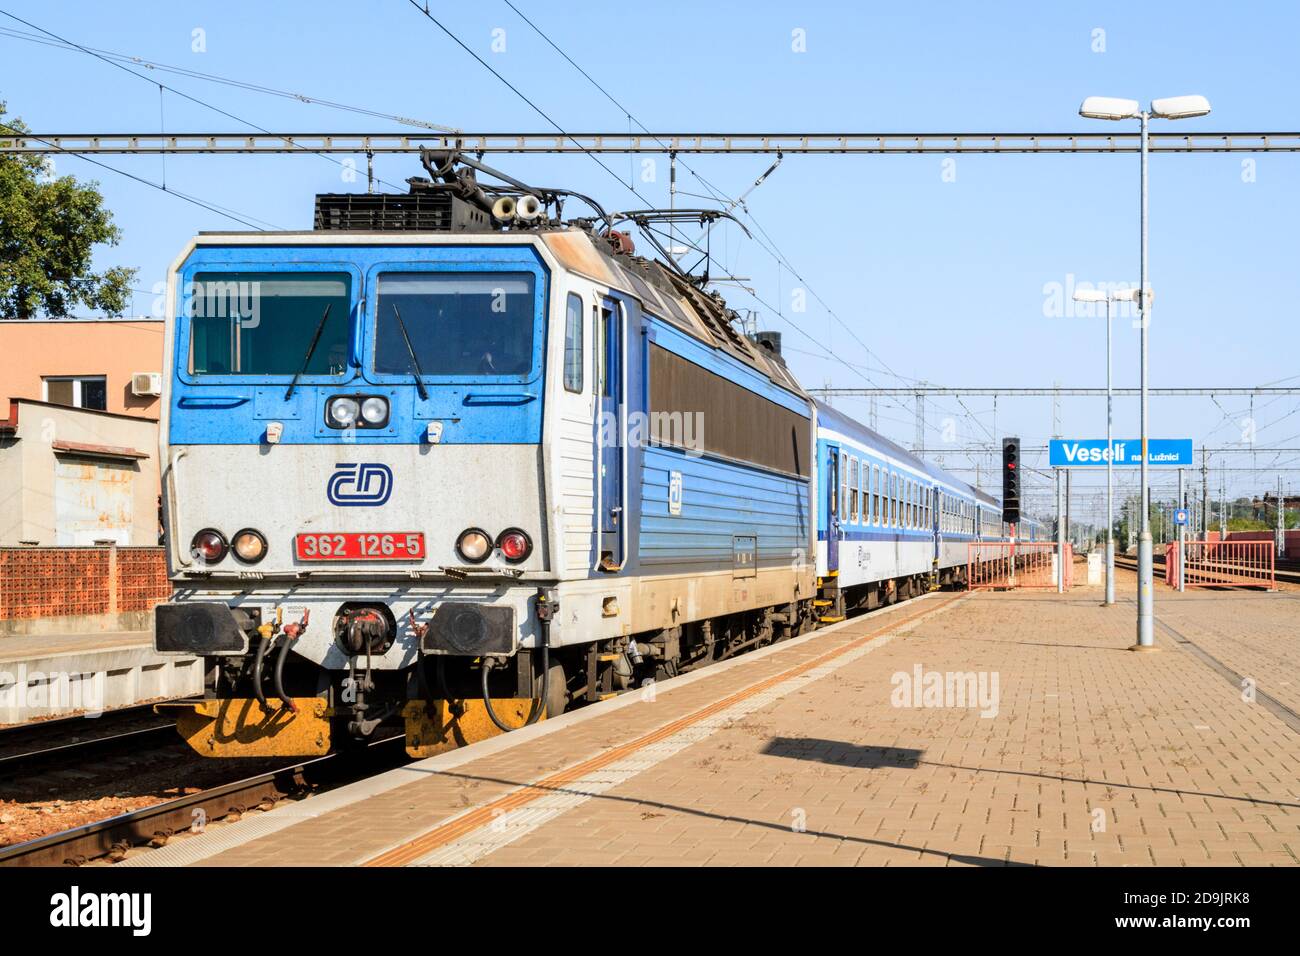 Un train de voyageurs électrique de classe 362 exploité par l'opérateur ferroviaire tchèque České dráhy, arrivant à Veselí nad Lužnicí (République tchèque) Banque D'Images